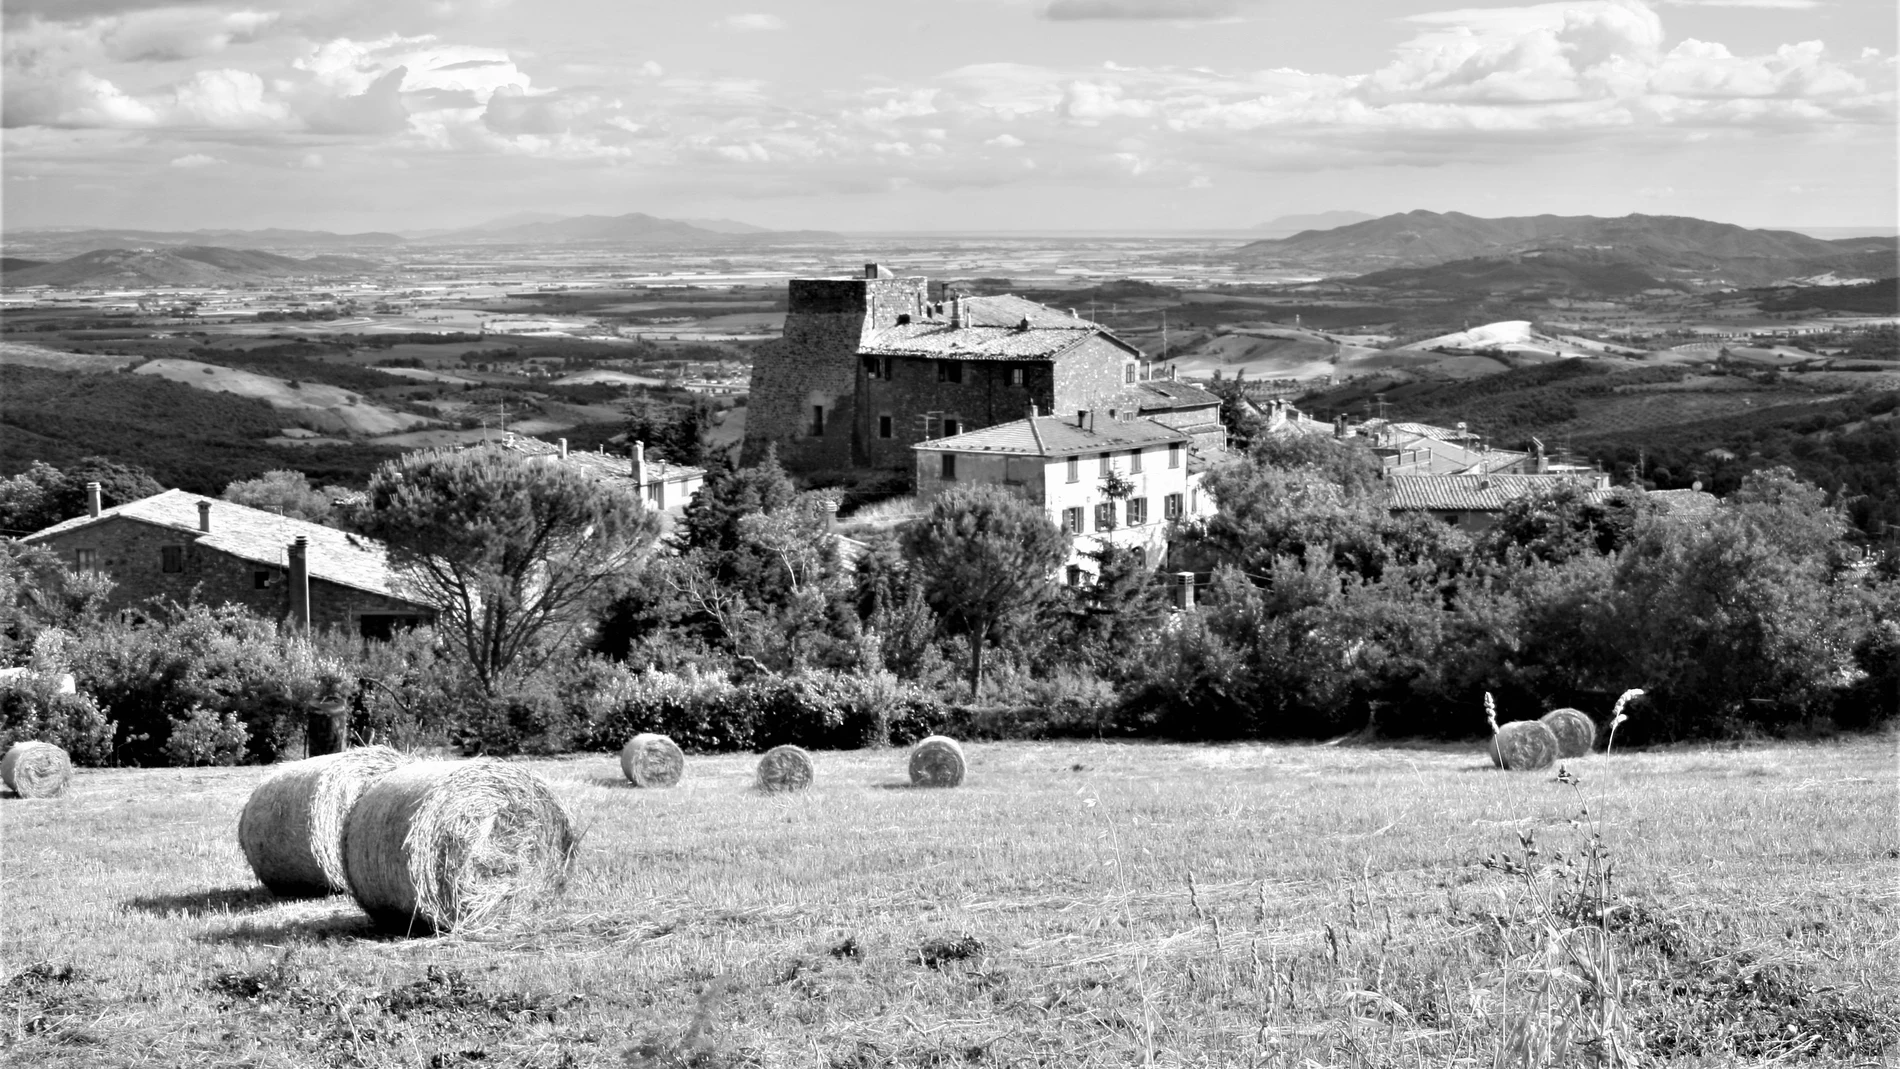 La Toscana es una de las regiones más inspiradoras de Europa y, ahora, lugar escogido por Ilia Galán (en la imagen de abajo) en su nueva obra